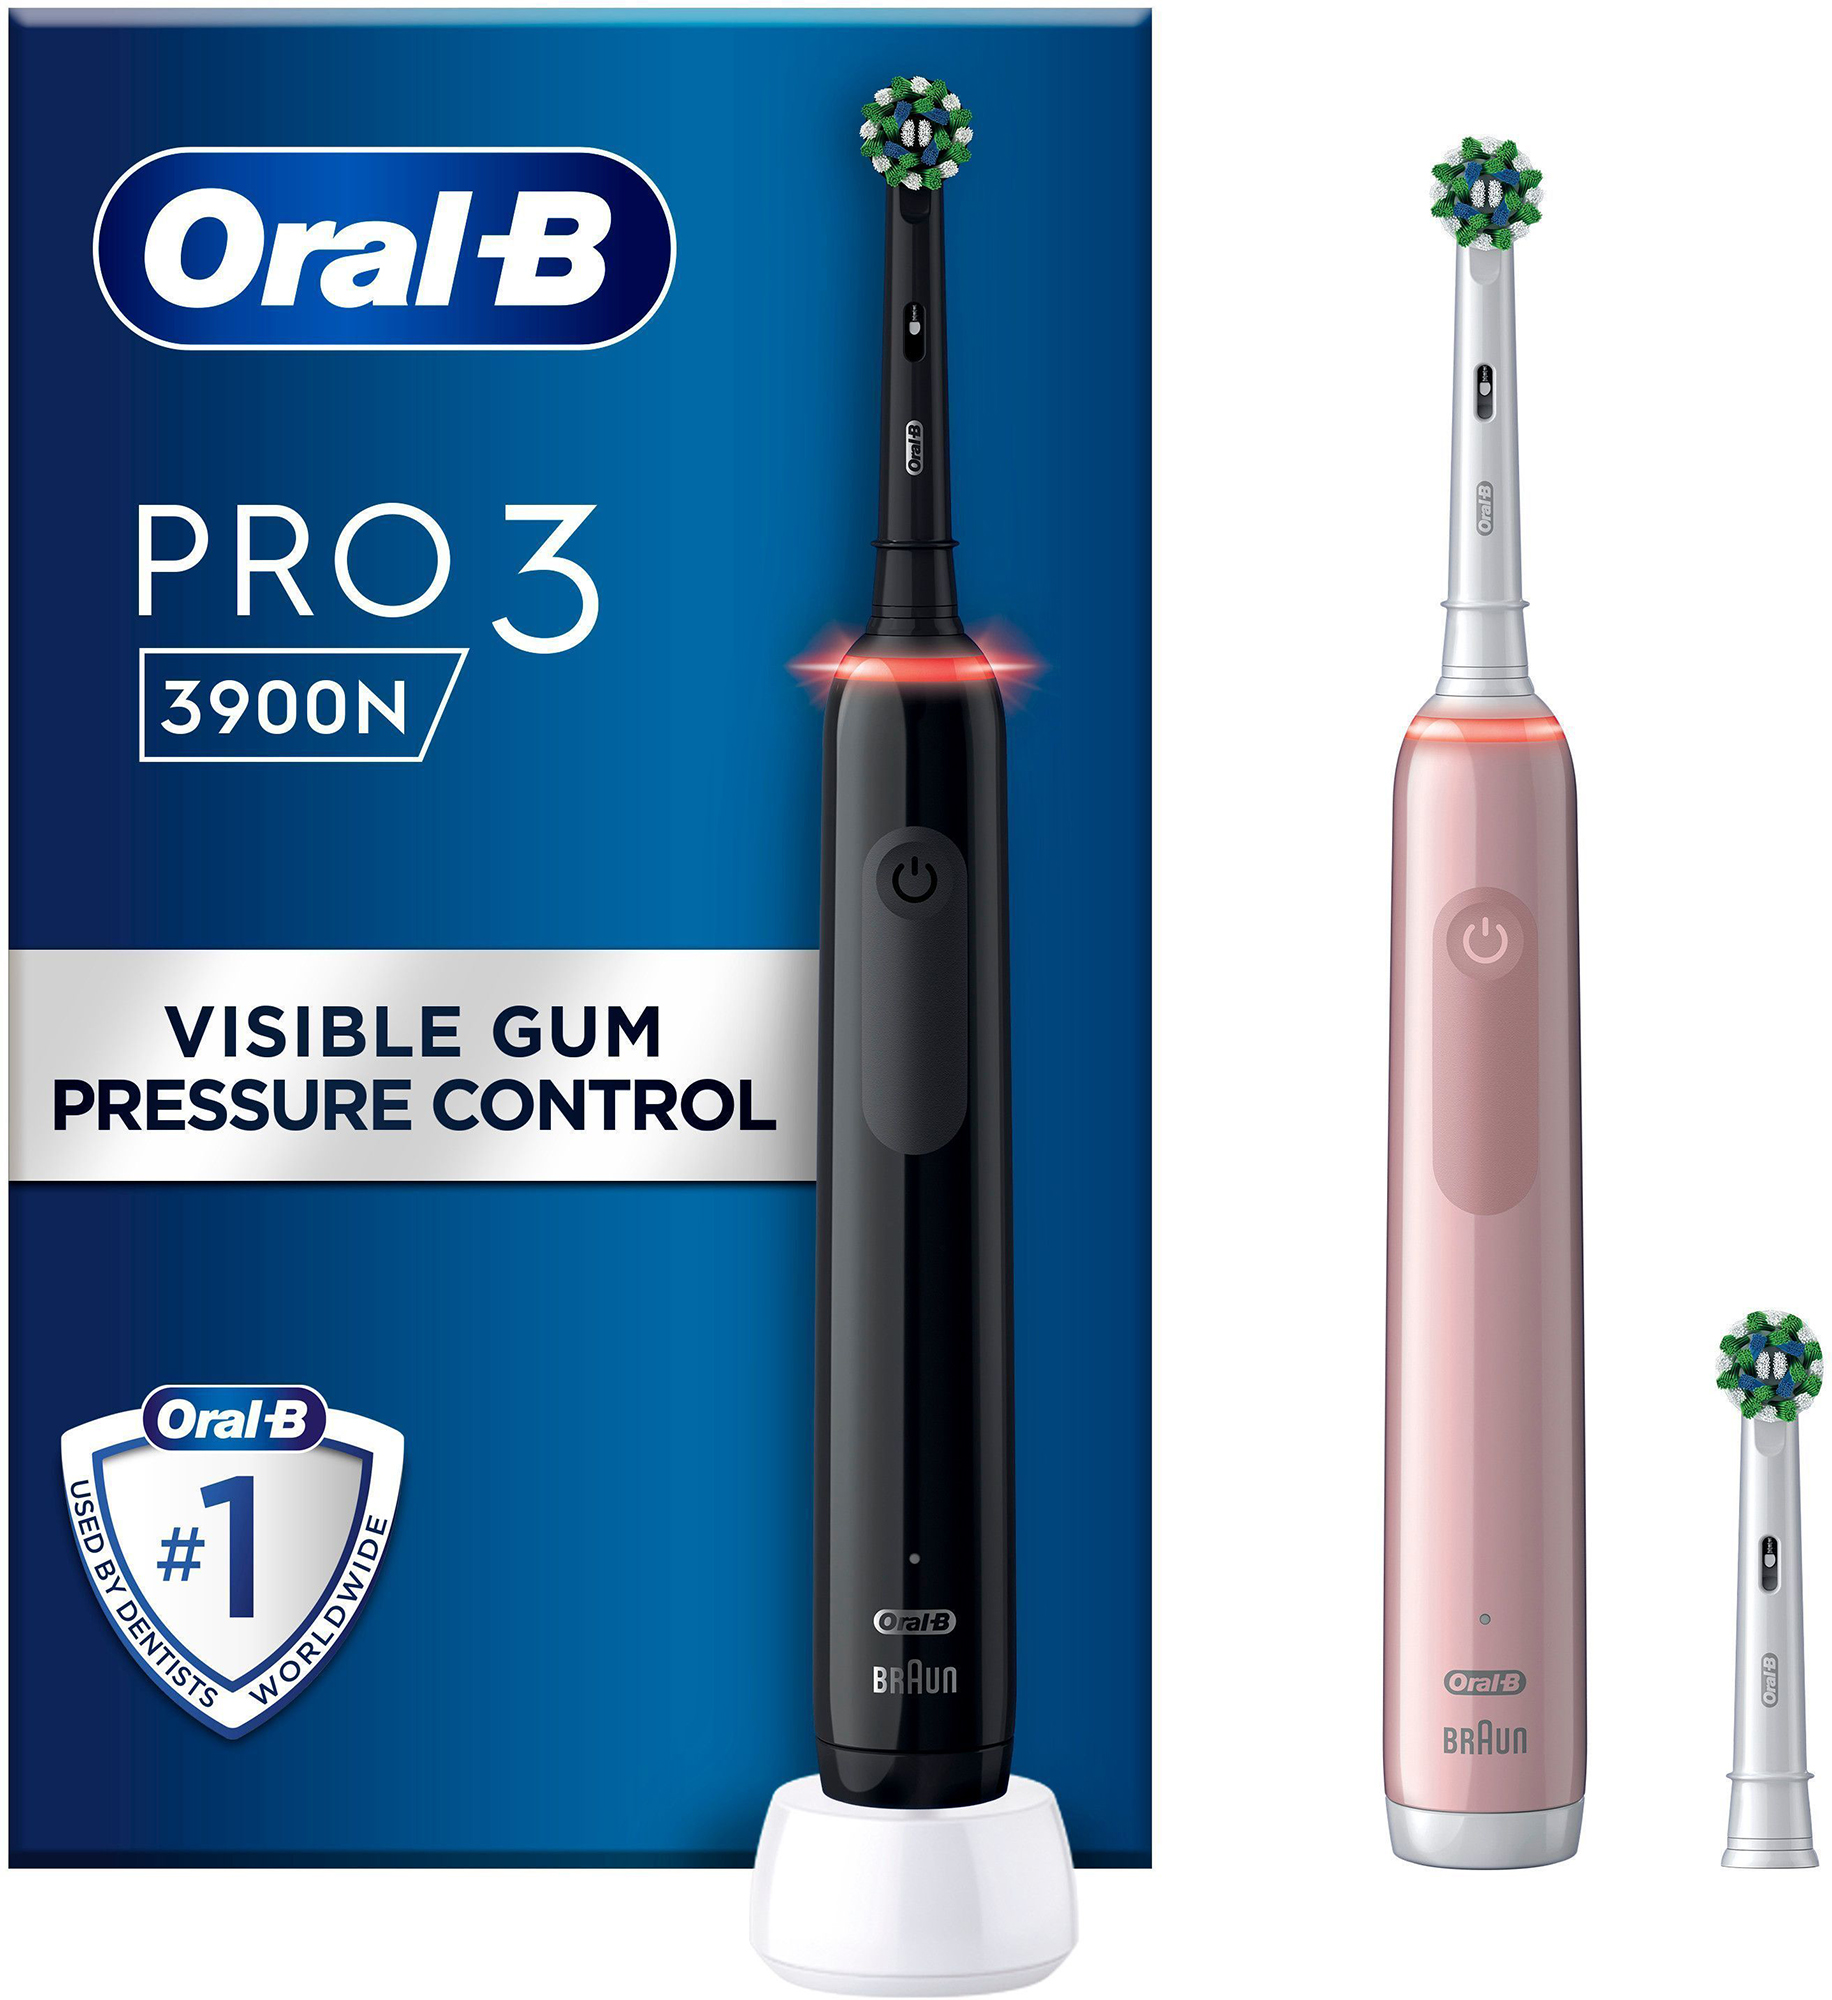 Oral B Super Dental Floss Pre-Cut 50 Counts